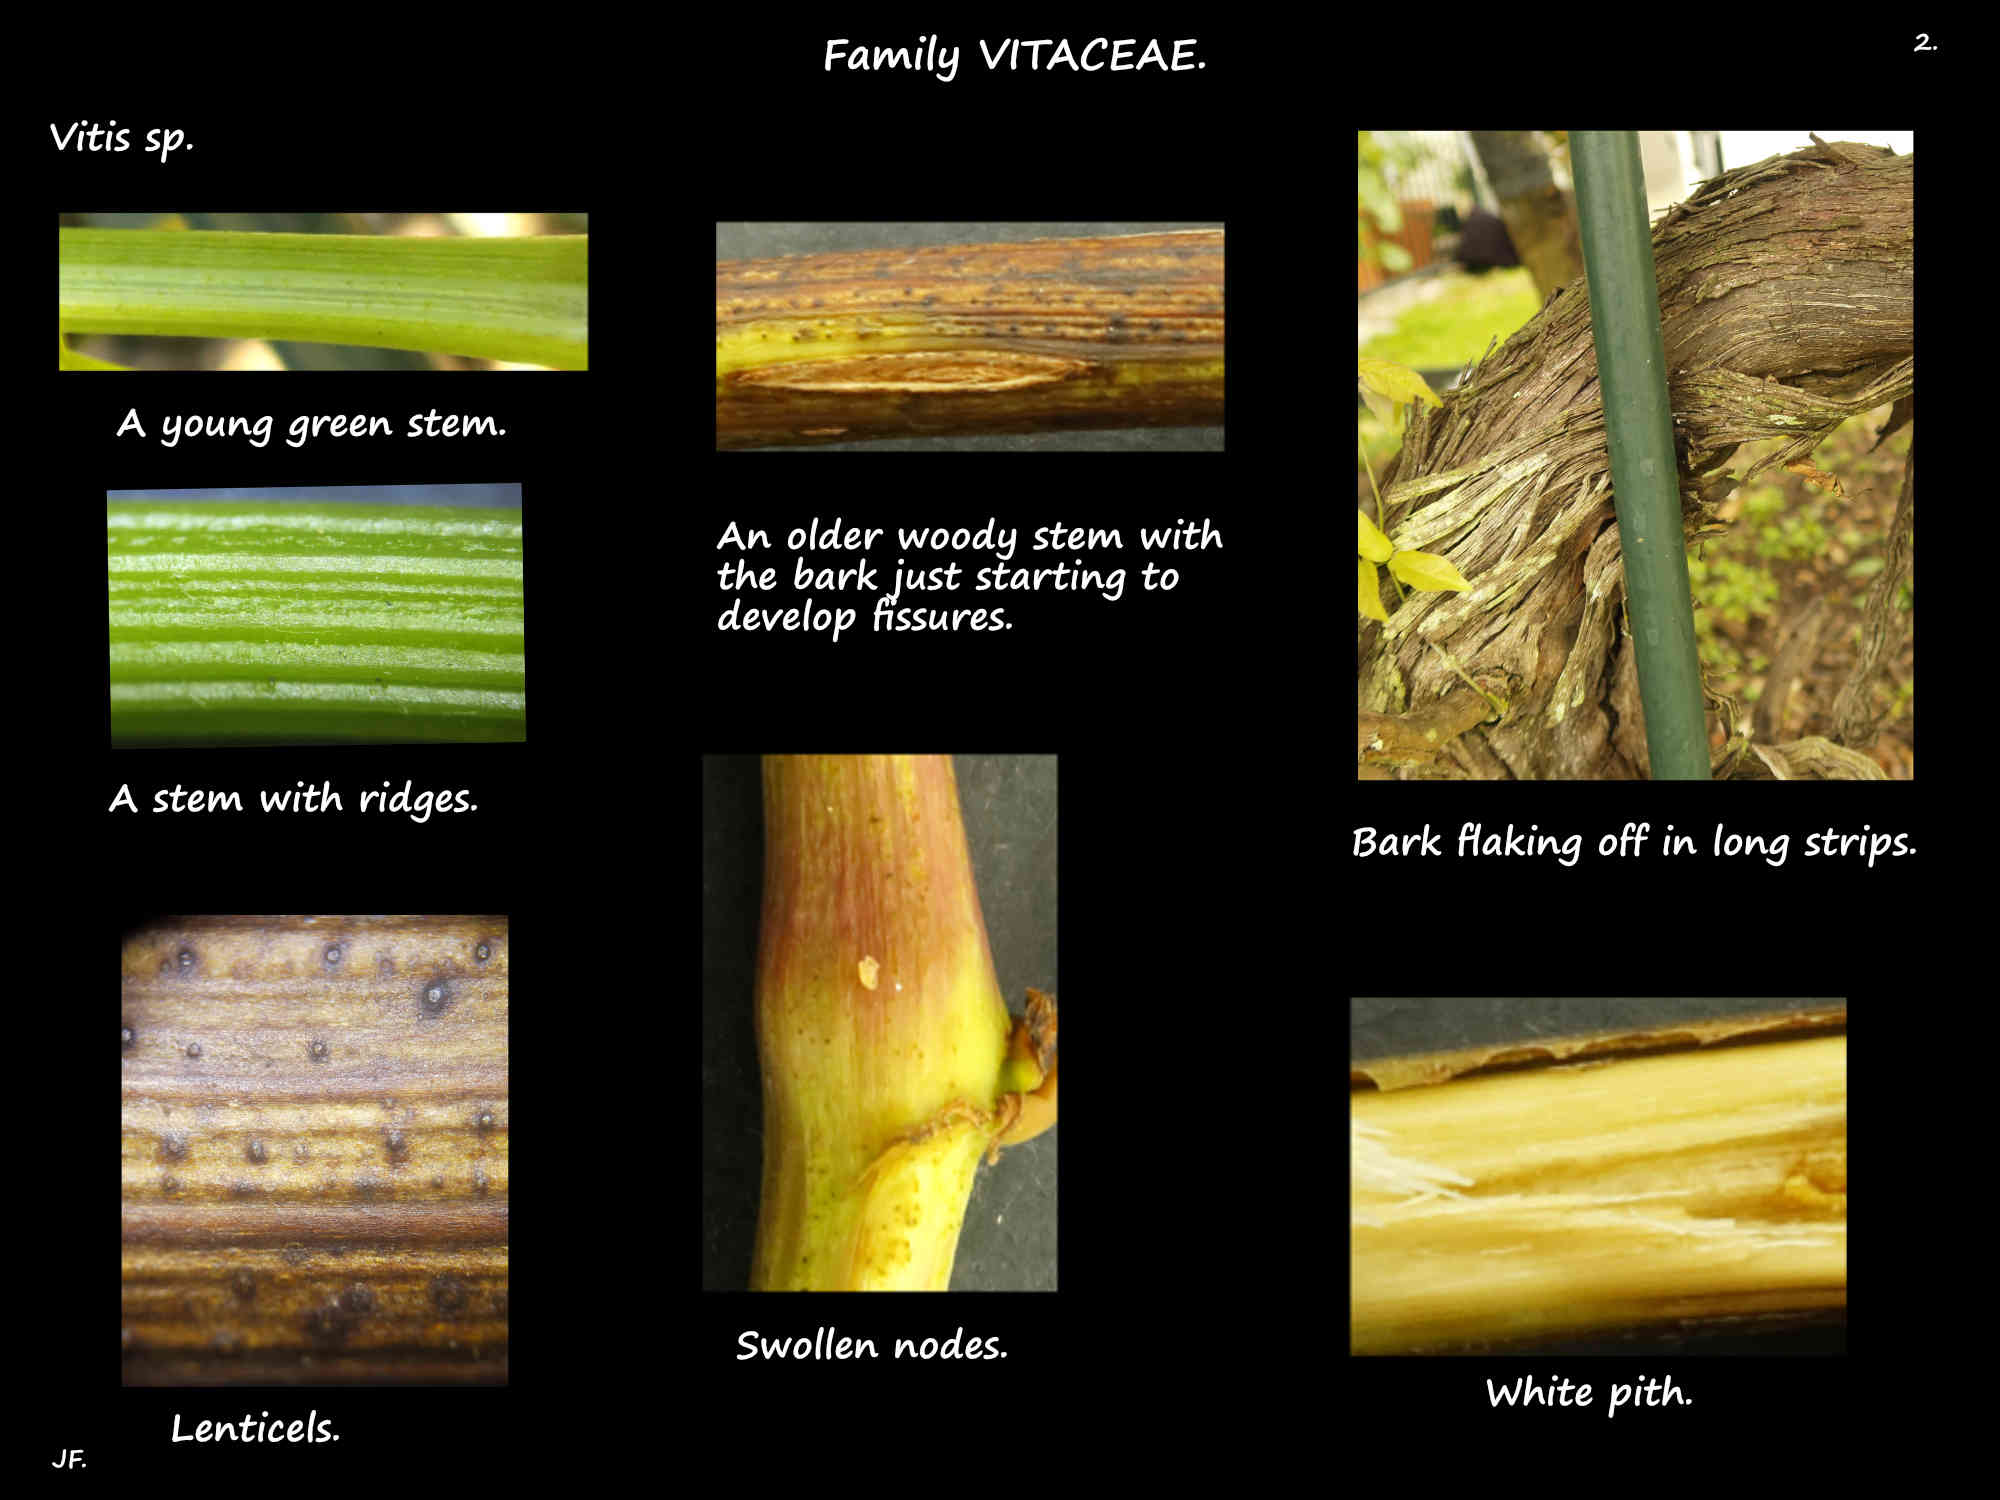 2 Vitis sp. stems, lenticels & peeling bark